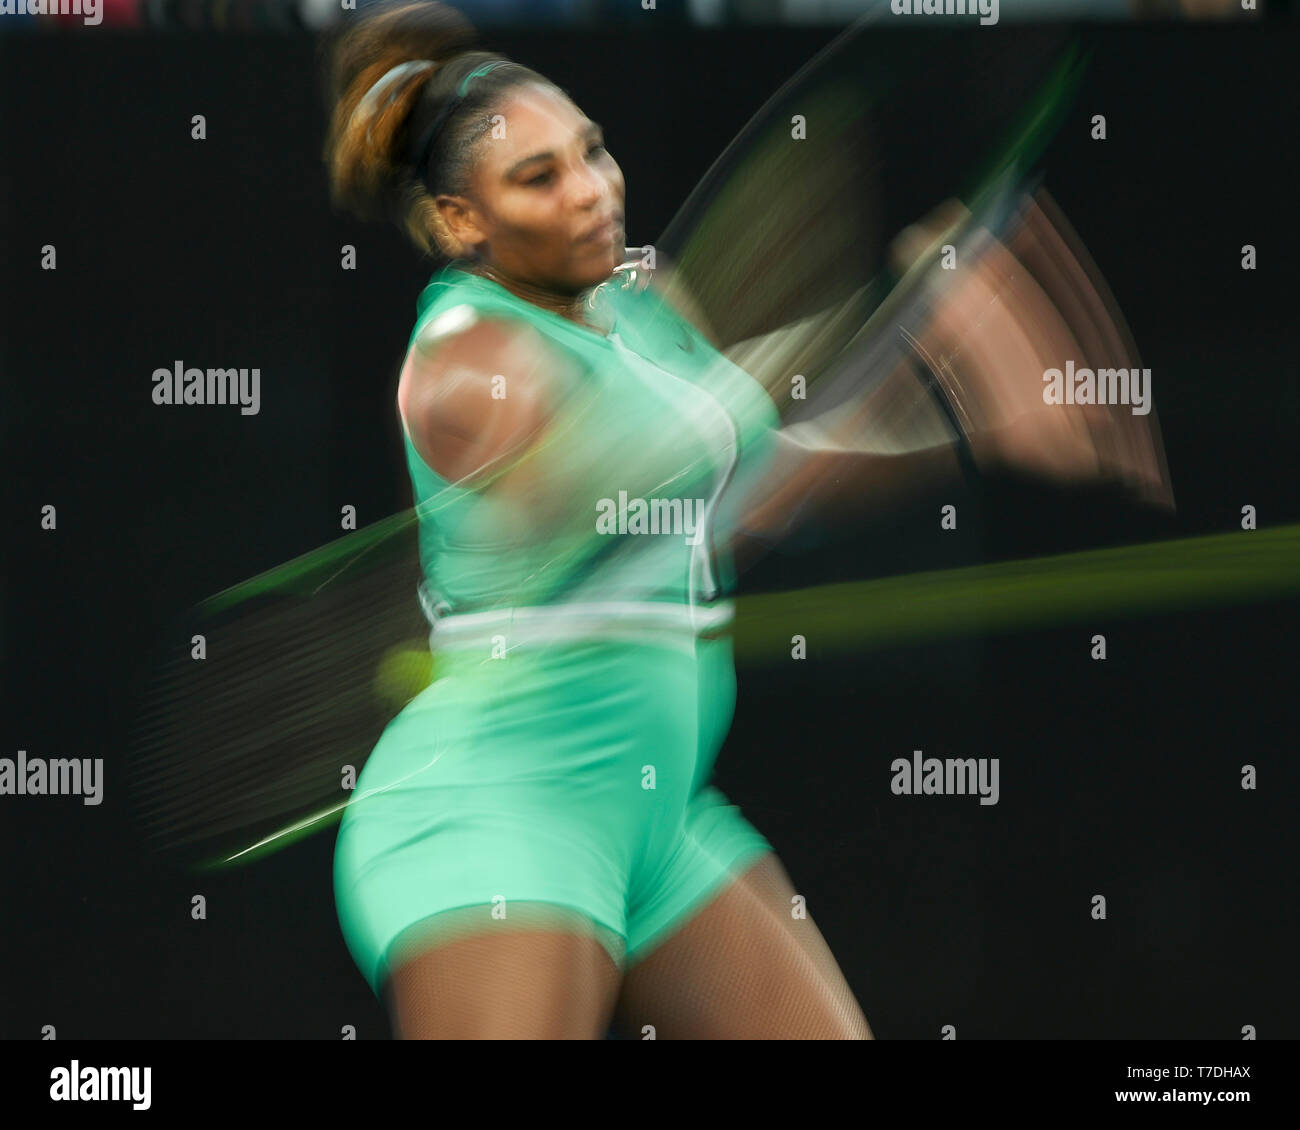 La tenista estadounidense Serena Williams jugando durante el torneo de tenis Abierto de Australia 2019, Melbourne Park, Melbourne, Victoria, Australia Foto de stock